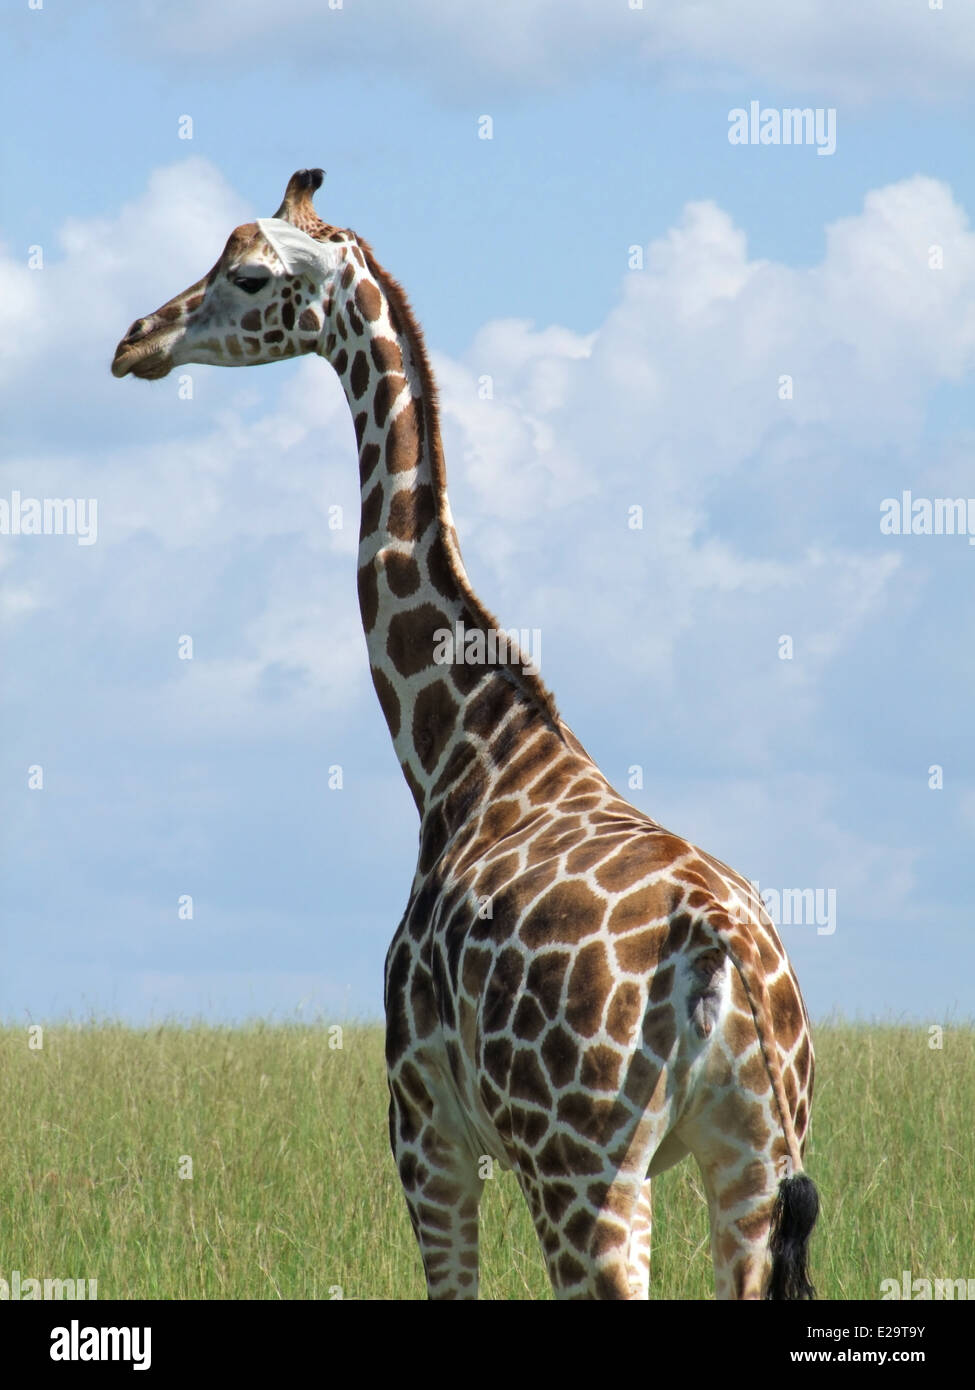 Détail d'une girafe Rothschild en Ouganda (Afrique) Banque D'Images